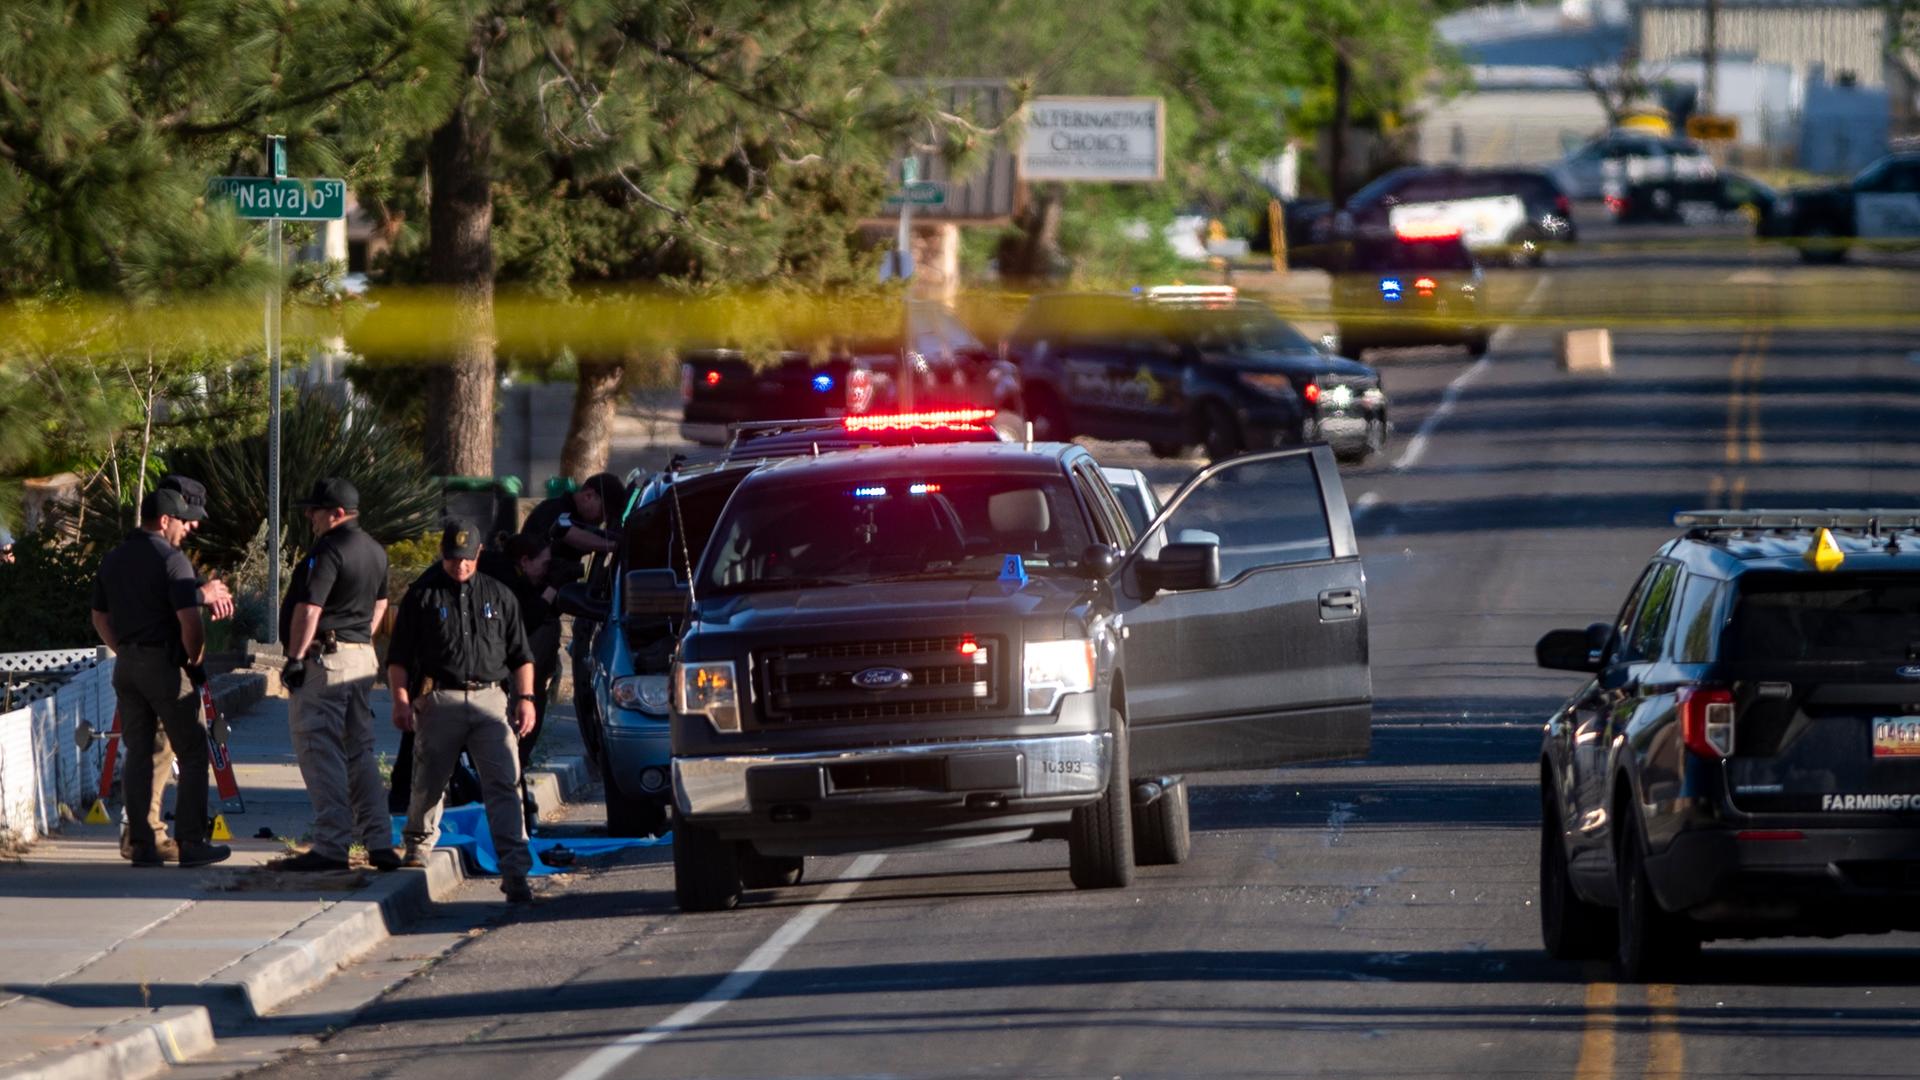 Die Polizei sperrt eine Straße in Farmington im US-Bundesstaat New Mexico.